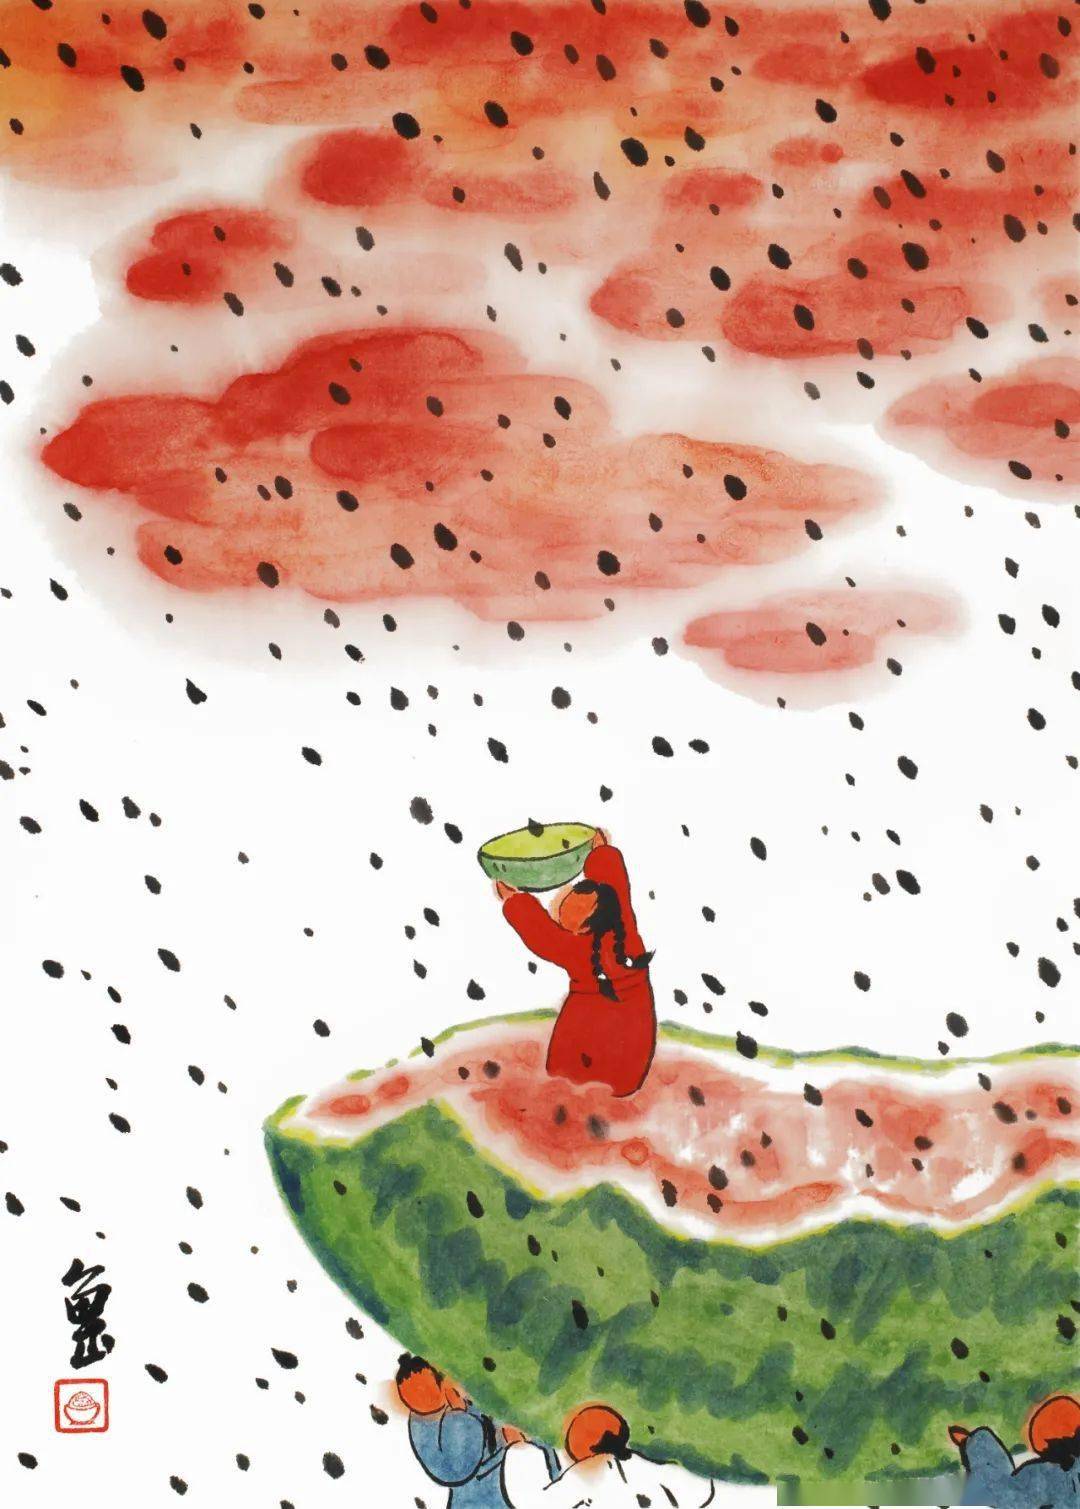 我画西瓜就是为了消暑,有时也画荔枝,樱桃,草莓之类的水果,但对西瓜